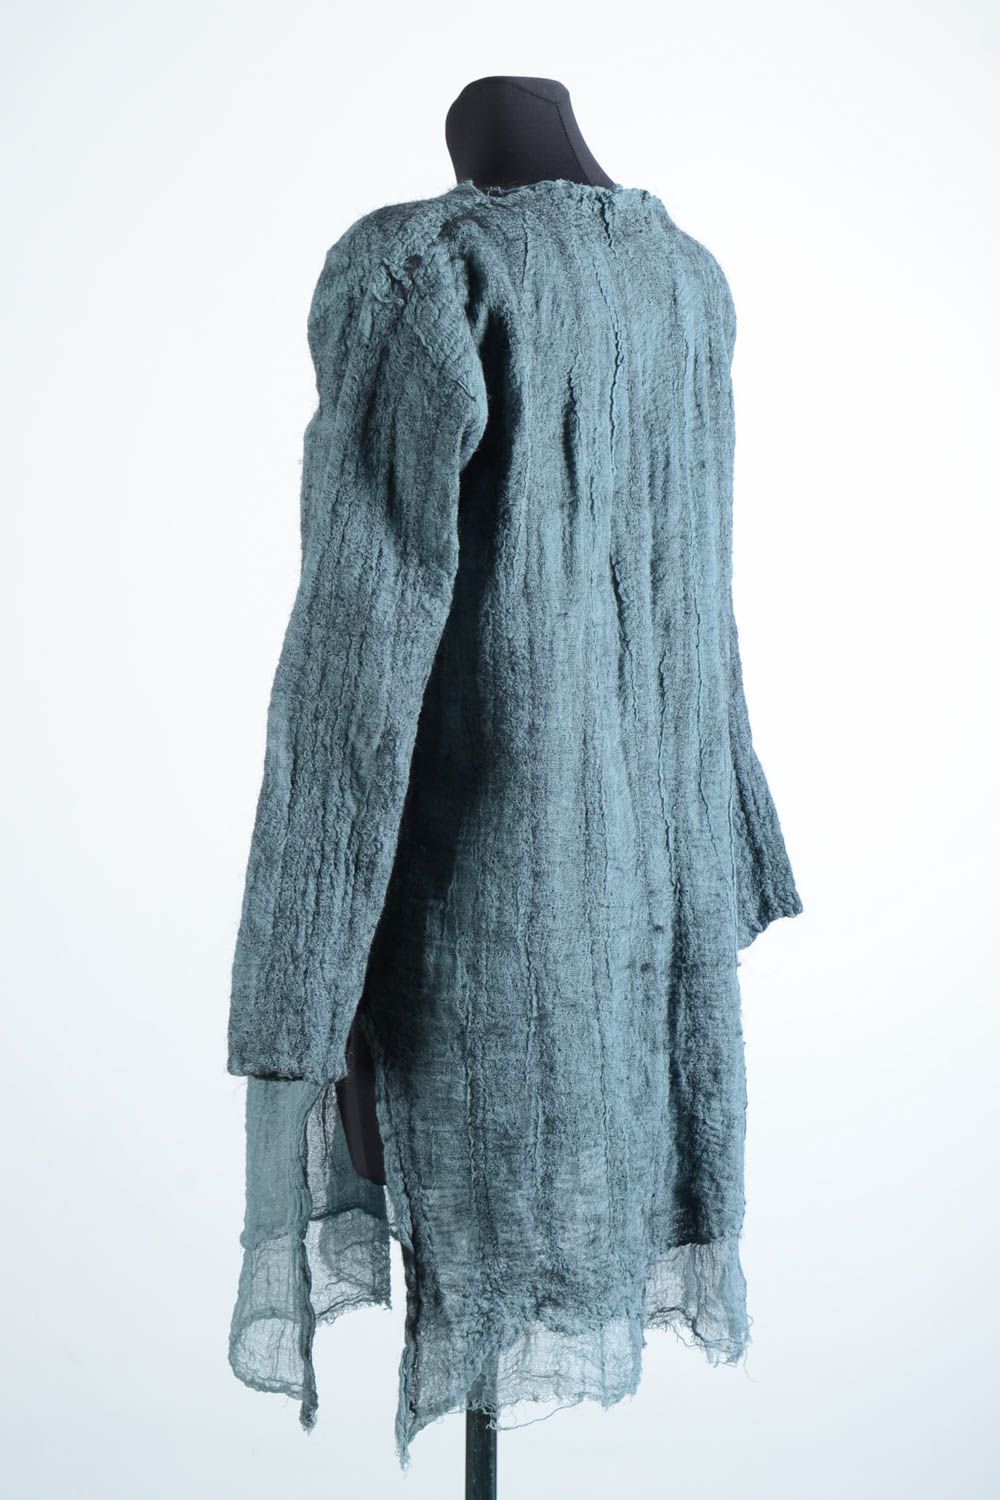 Langes Kleid handmade Damen Kleid Herbst Kleidung aus Naturfasern in Grau schön foto 4